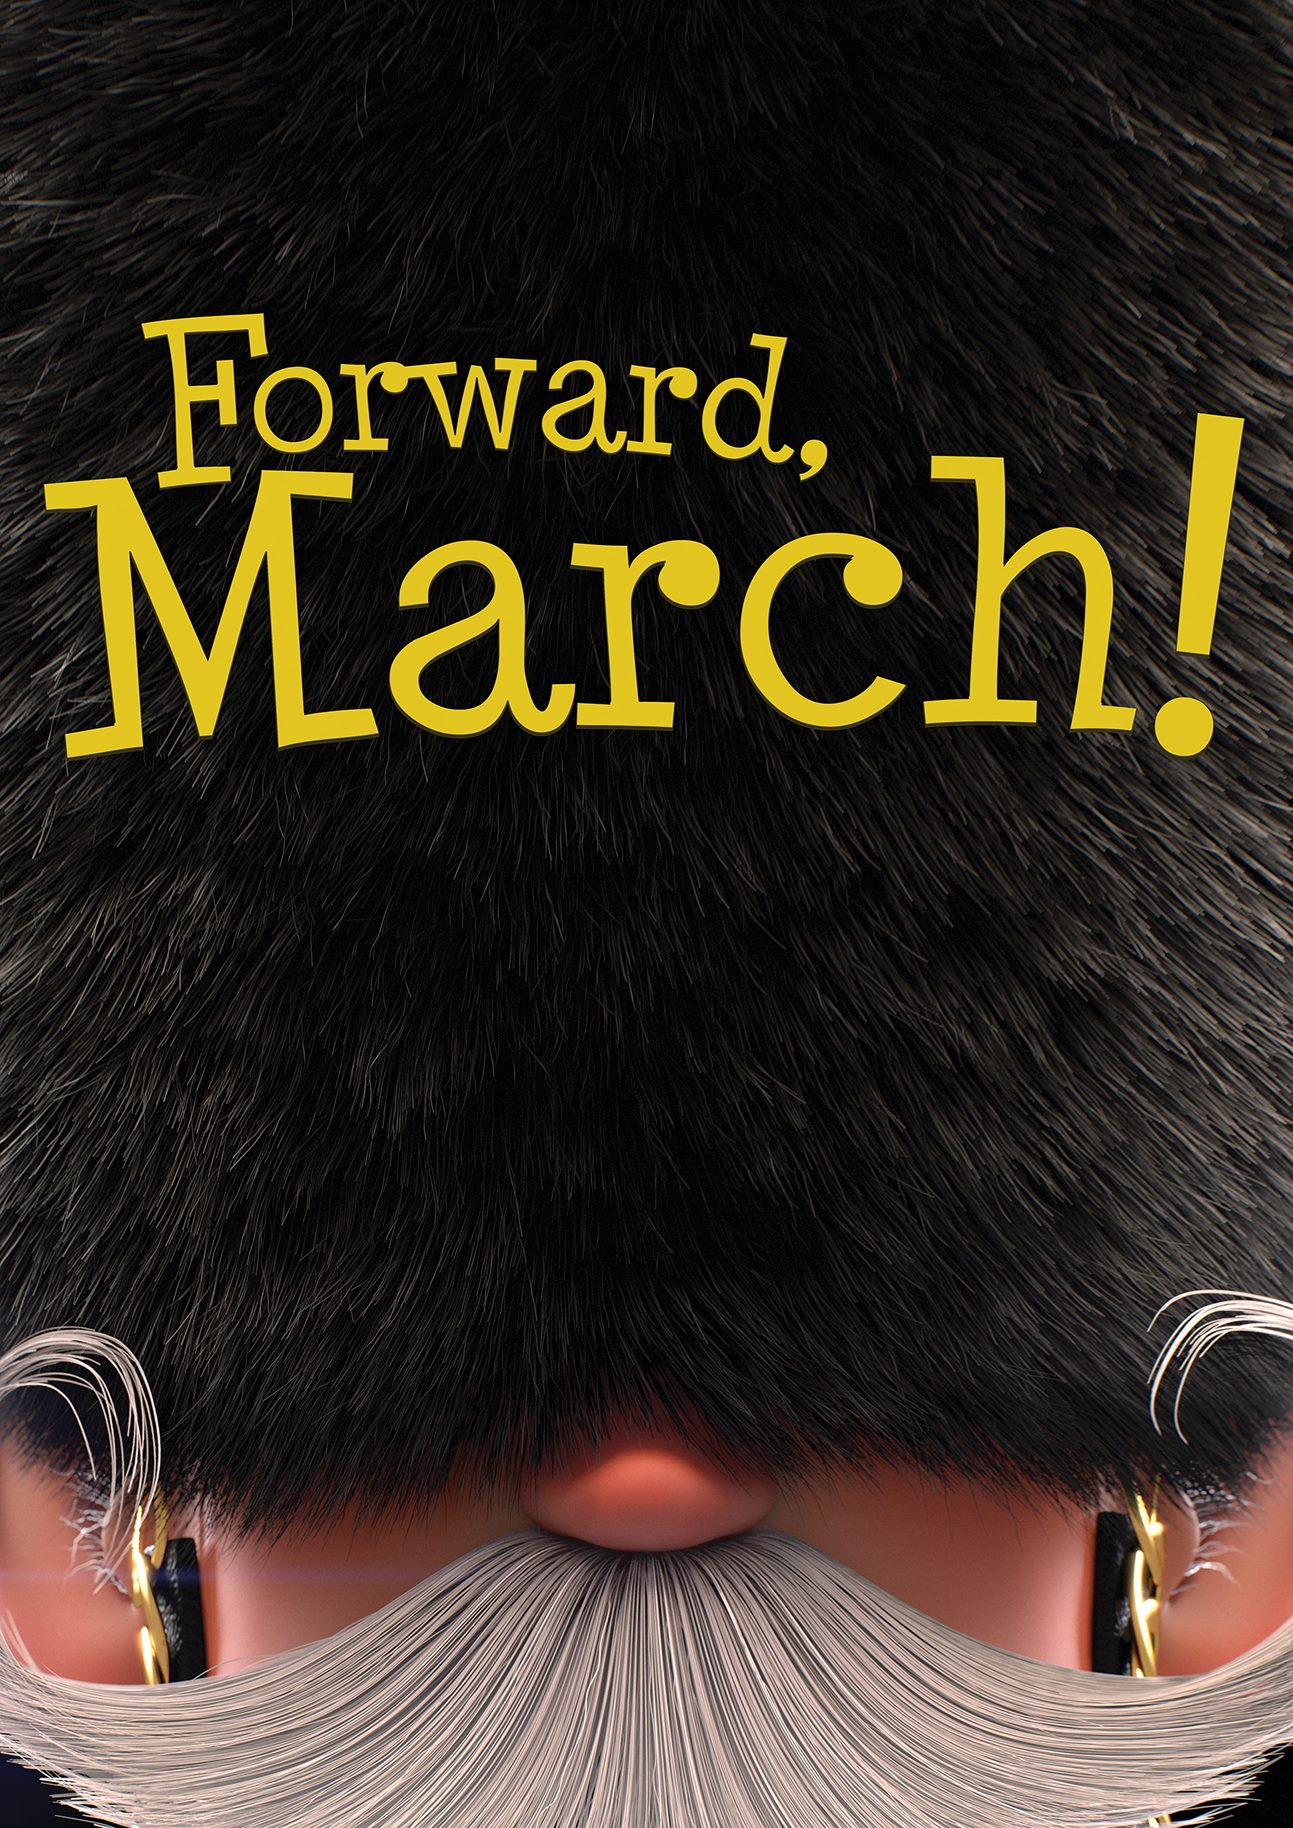 march-forward-2013